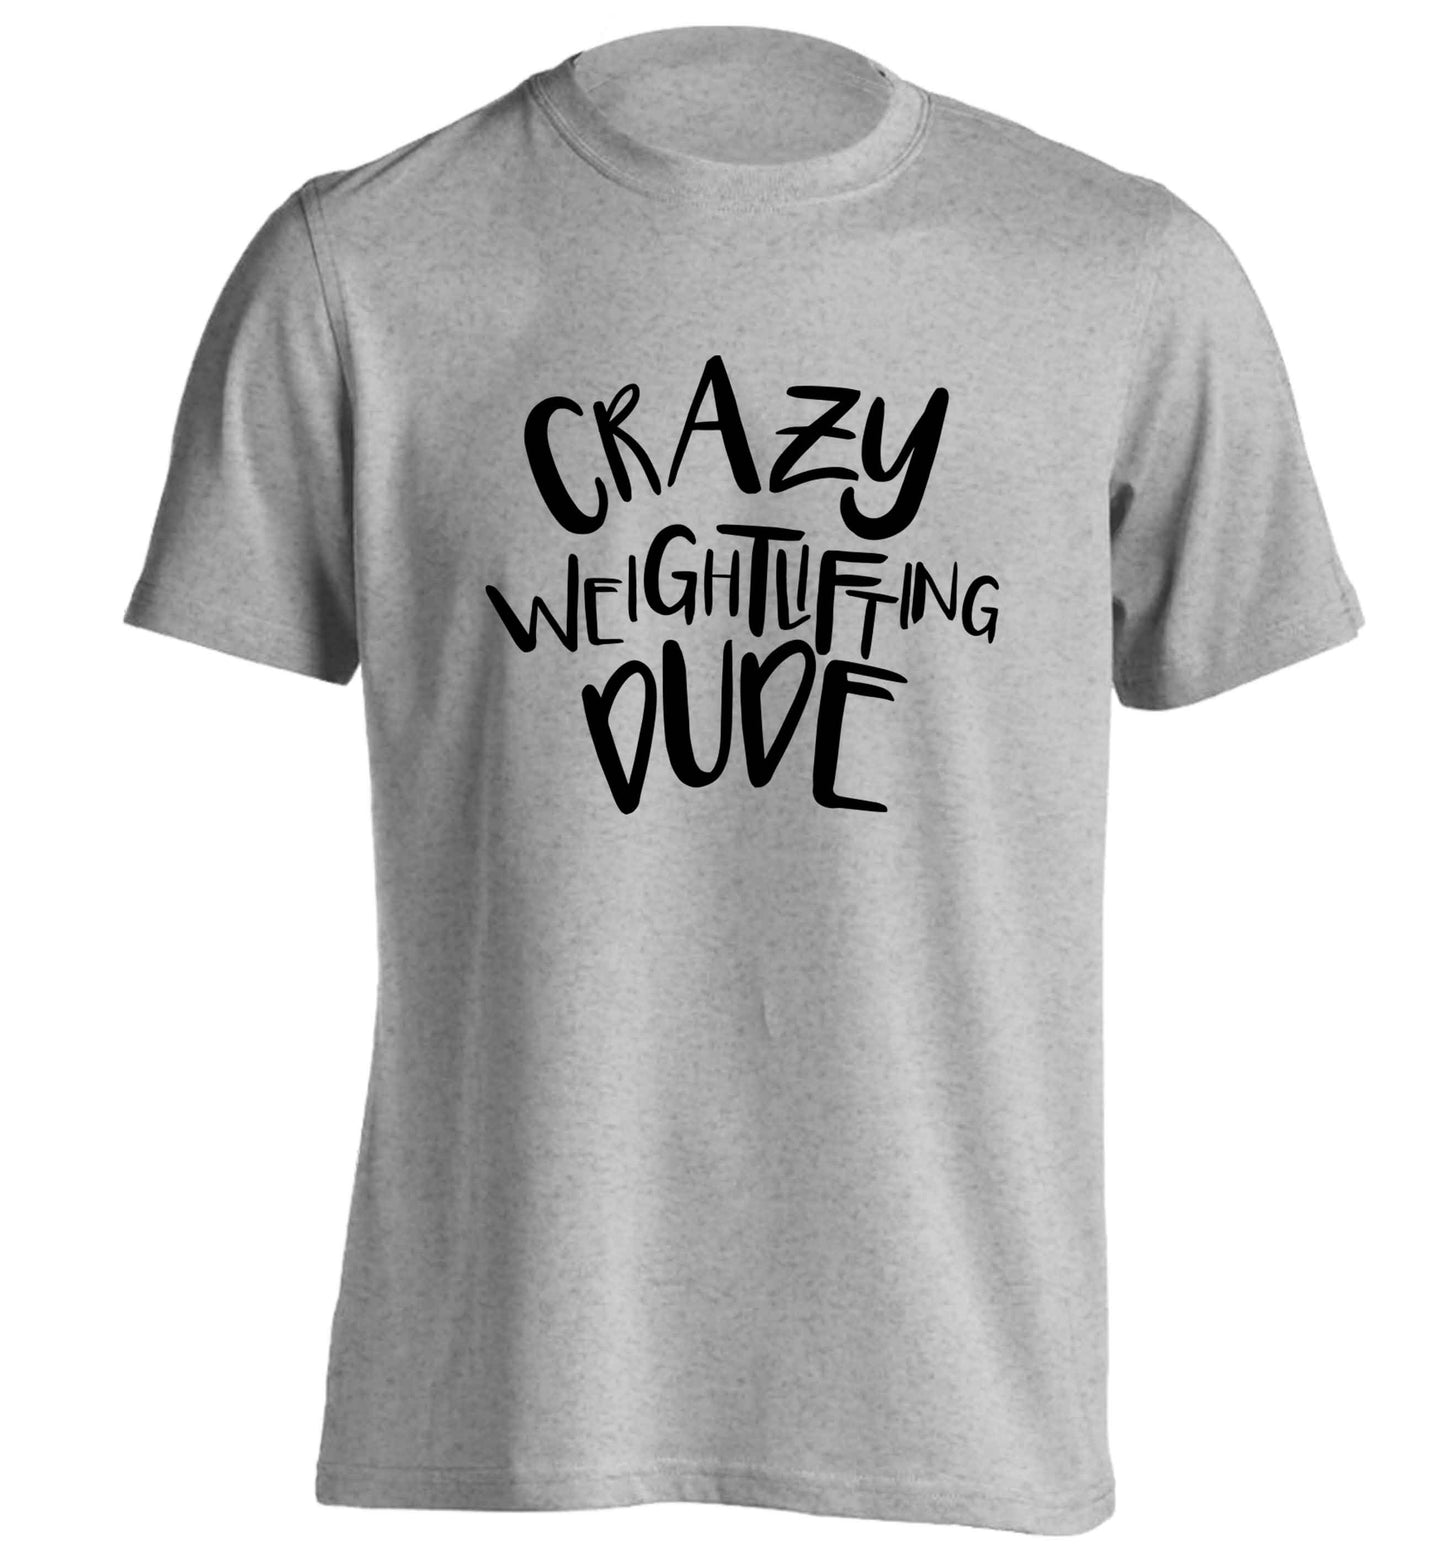 Crazy weightlifting dude adults unisex grey Tshirt 2XL